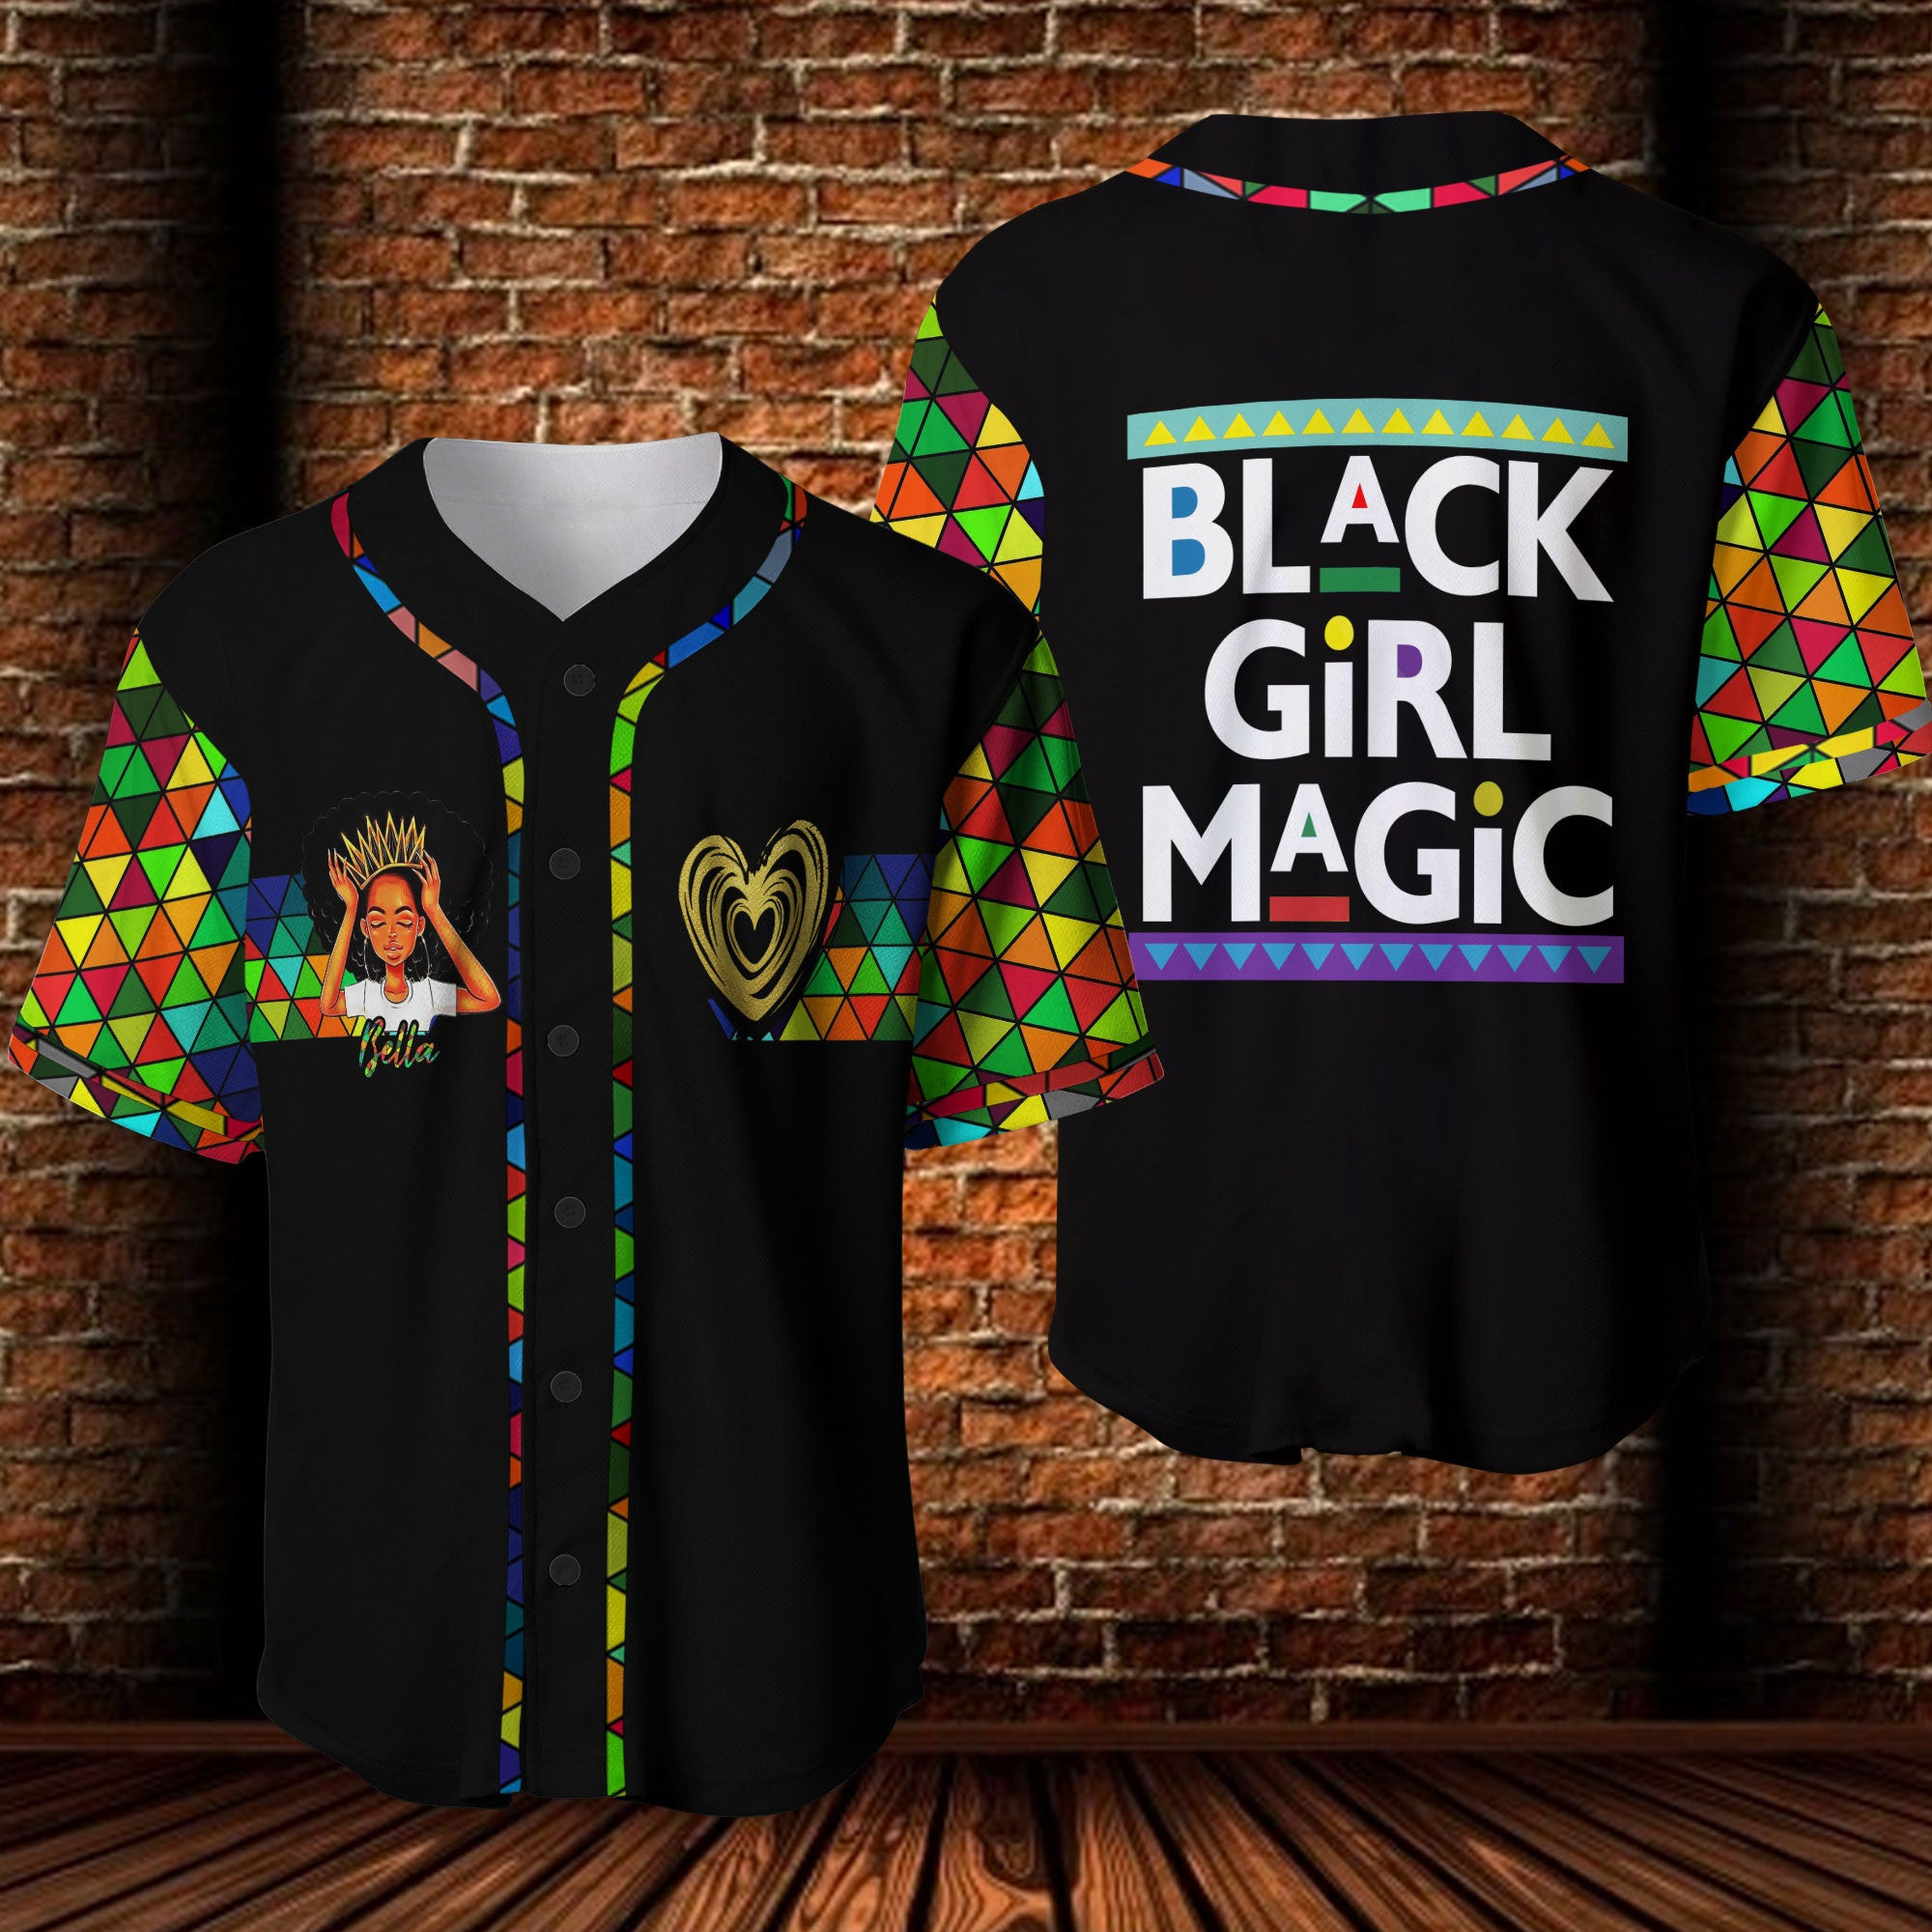 Black Girl Magic Personalized Baseball Jersey